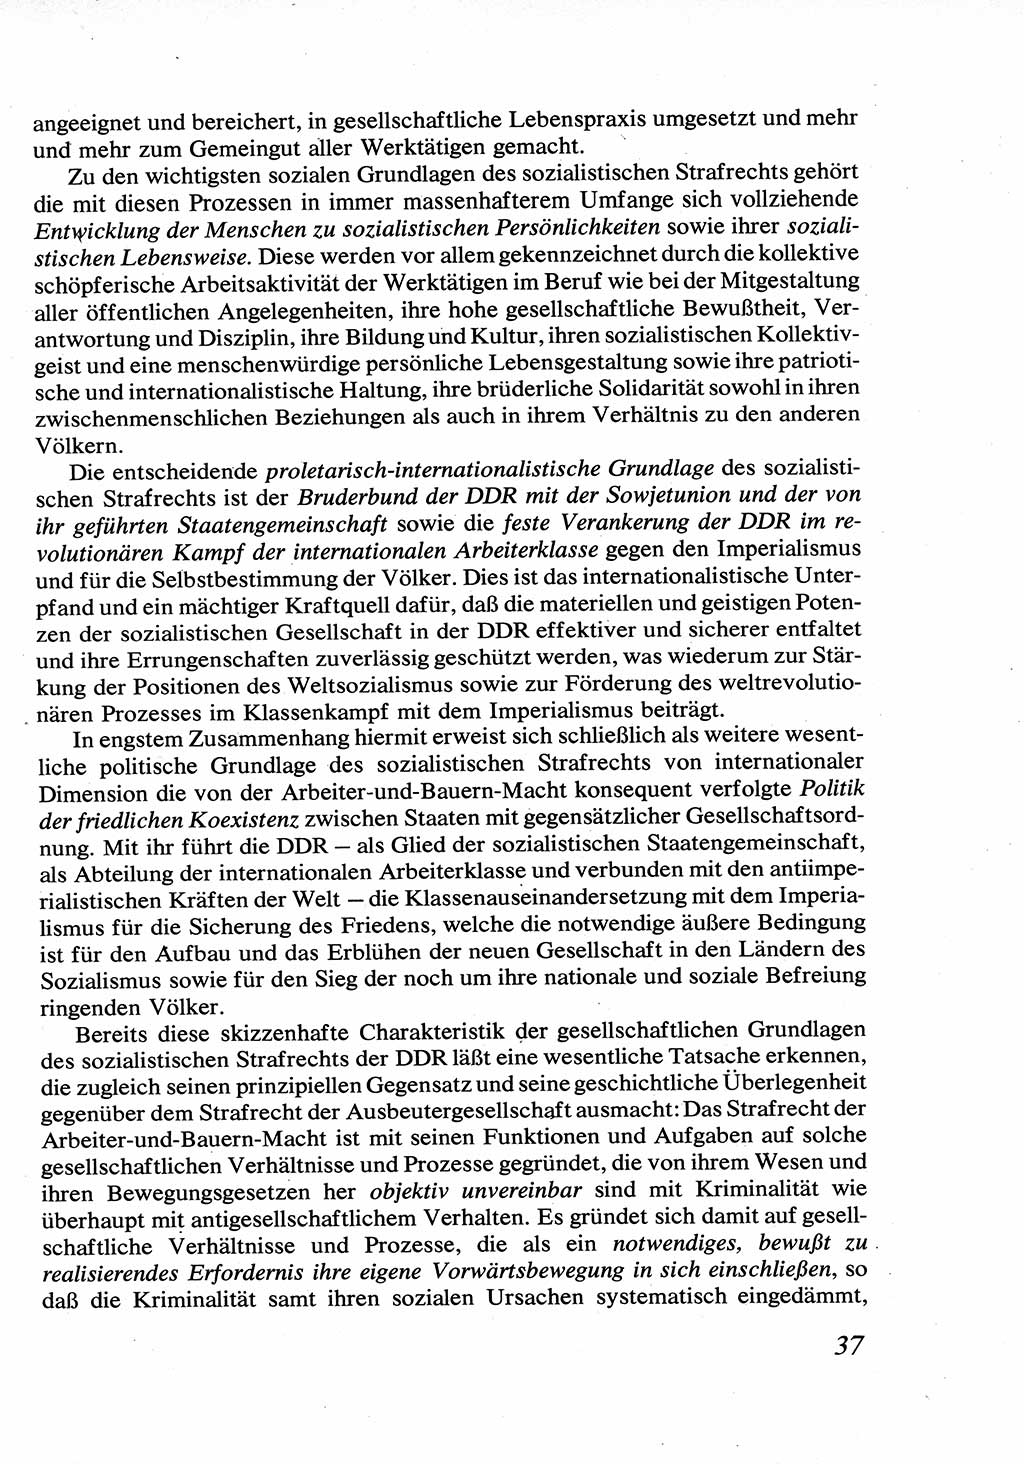 Strafrecht [Deutsche Demokratische Republik (DDR)], Allgemeiner Teil, Lehrbuch 1976, Seite 37 (Strafr. DDR AT Lb. 1976, S. 37)